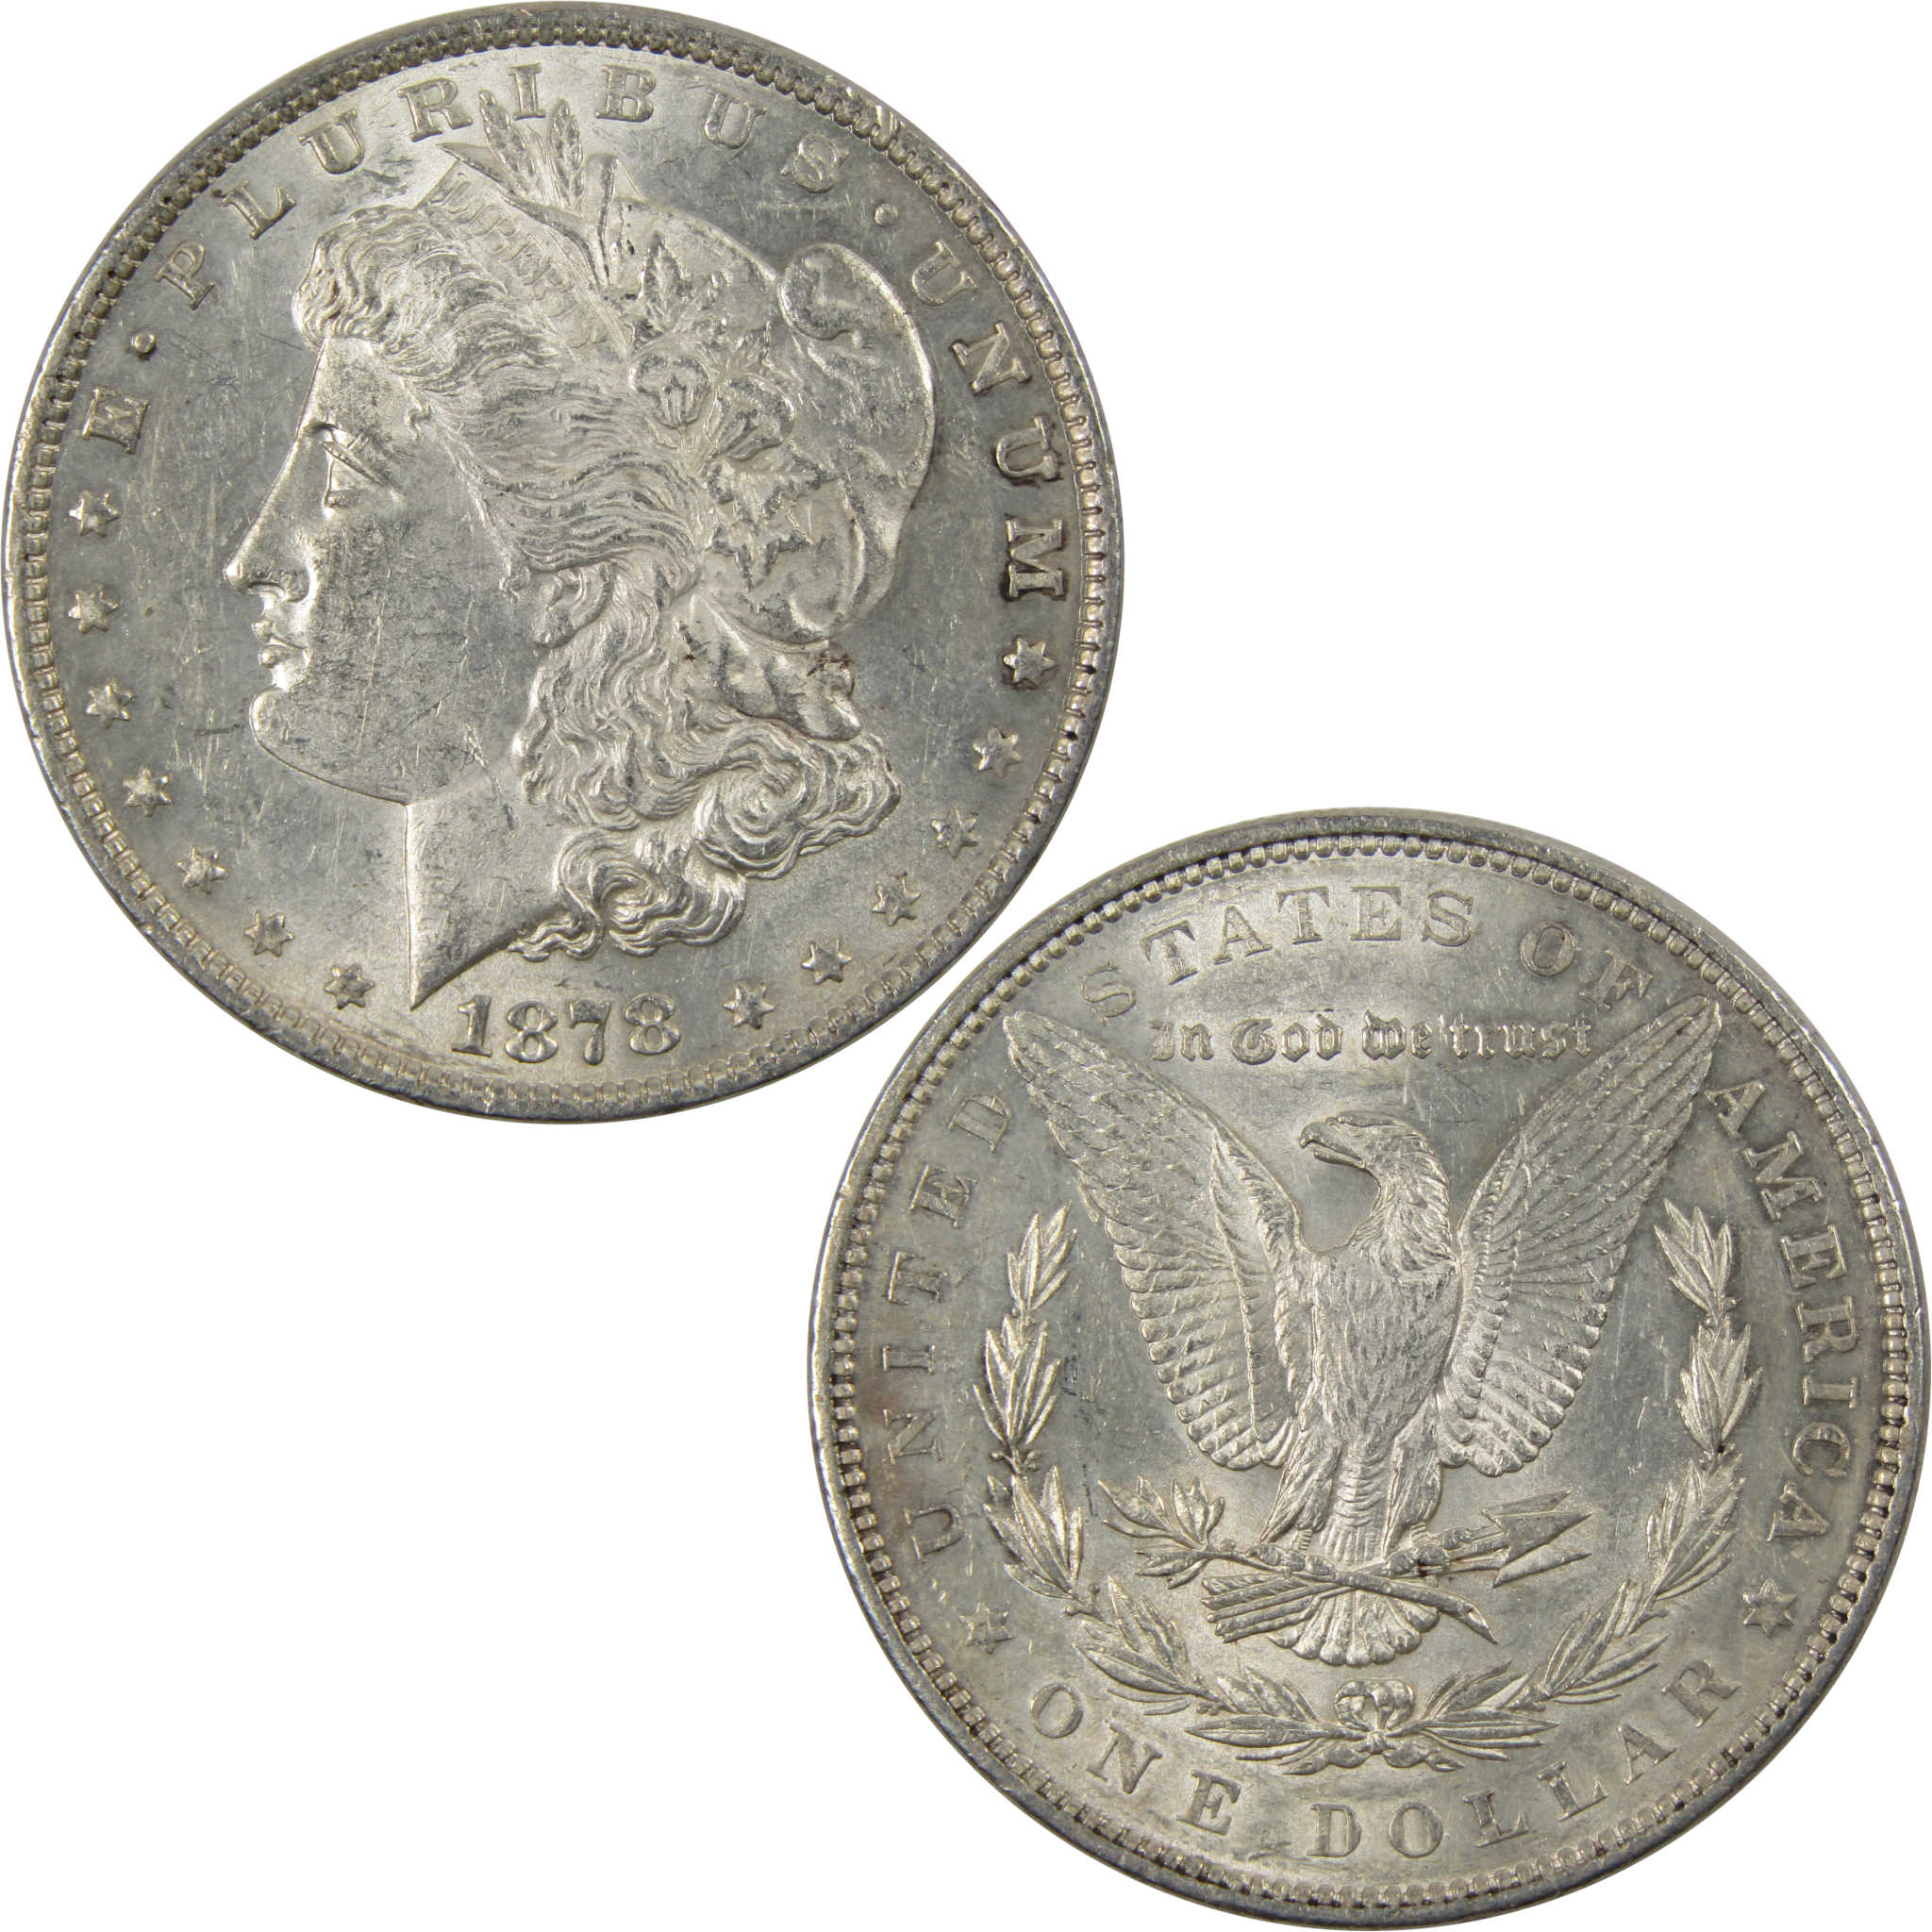 1878 7TF Rev 79 Morgan Dollar Borderline Uncirculated Silver SKU:I7381 - Morgan coin - Morgan silver dollar - Morgan silver dollar for sale - Profile Coins &amp; Collectibles